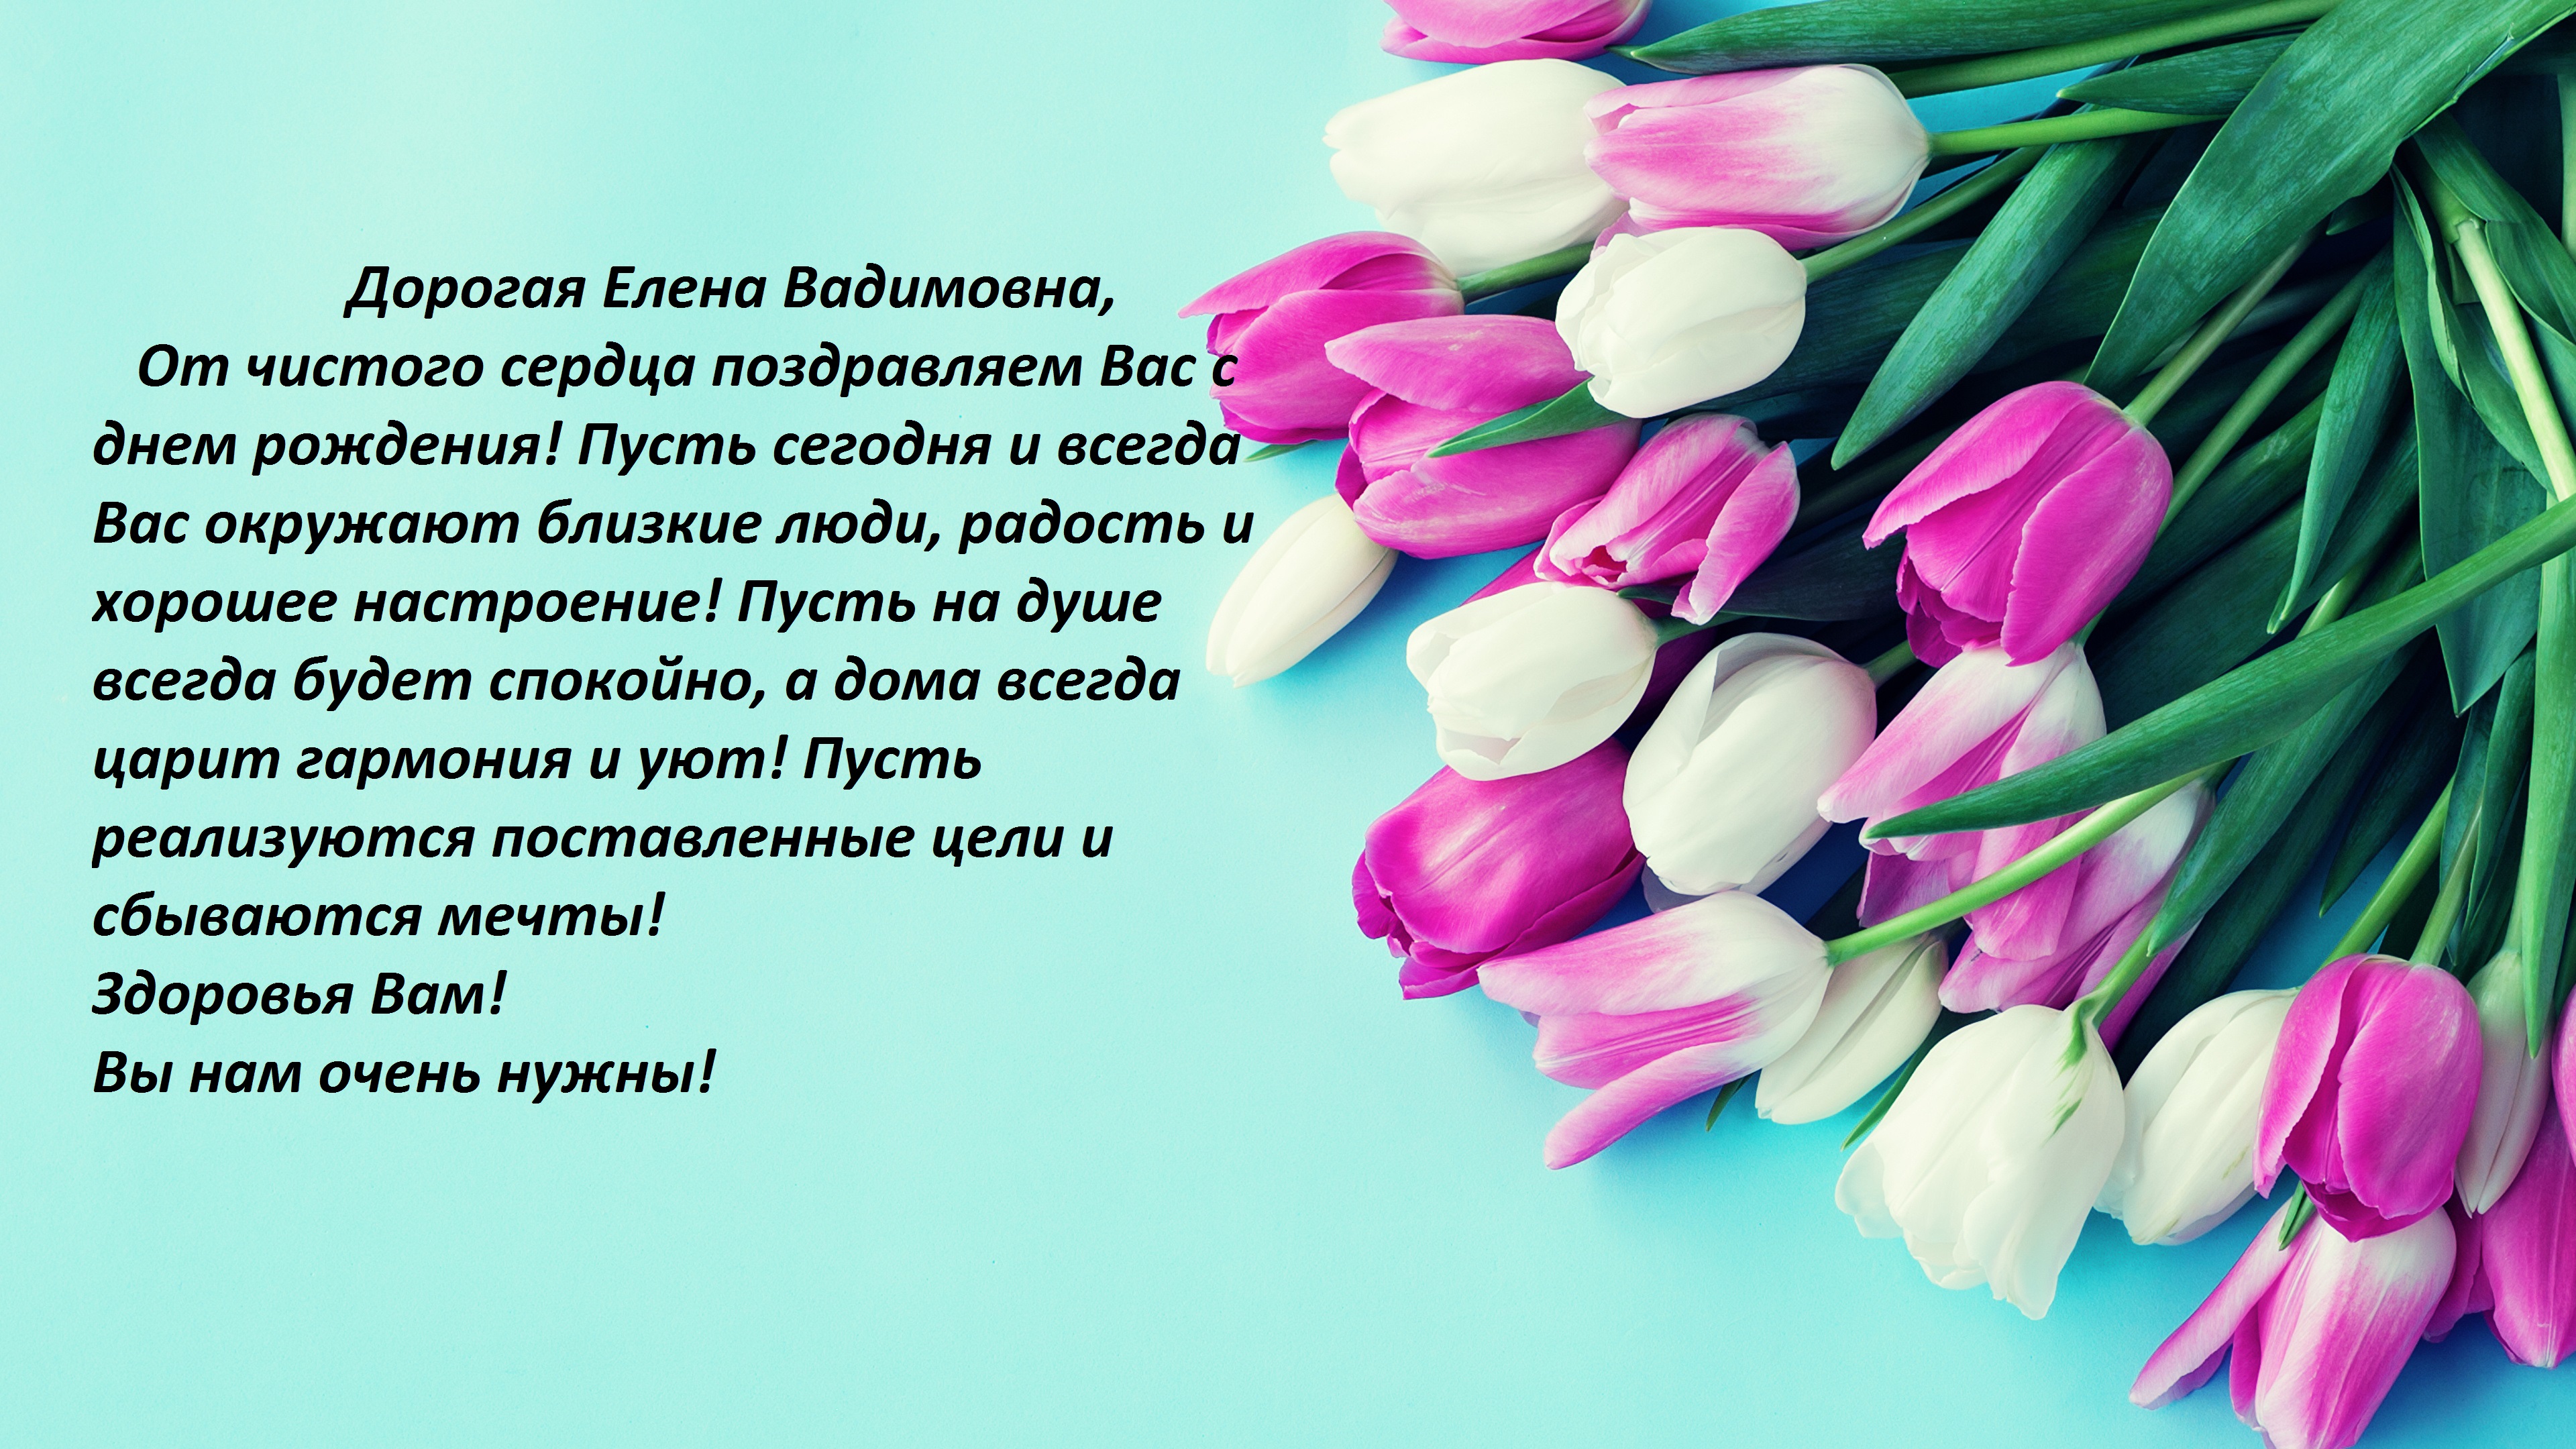 Сегодня, 29 марта, день рождения у Елены Вадимовны Аликиной, члена совета нашей школы! 